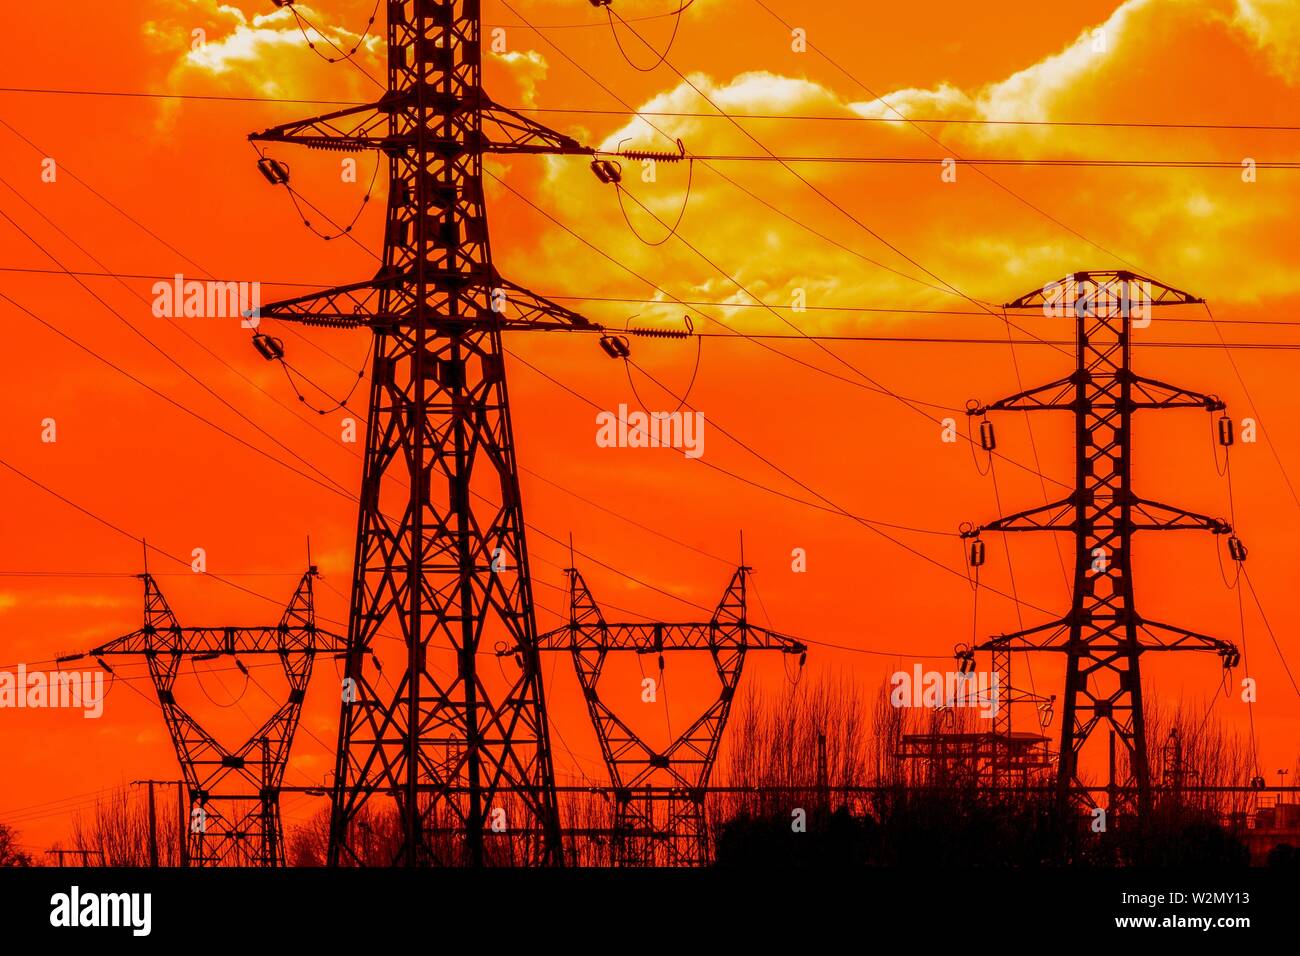 Los postes de la electricidad al atardecer, cielo naranja Foto de stock